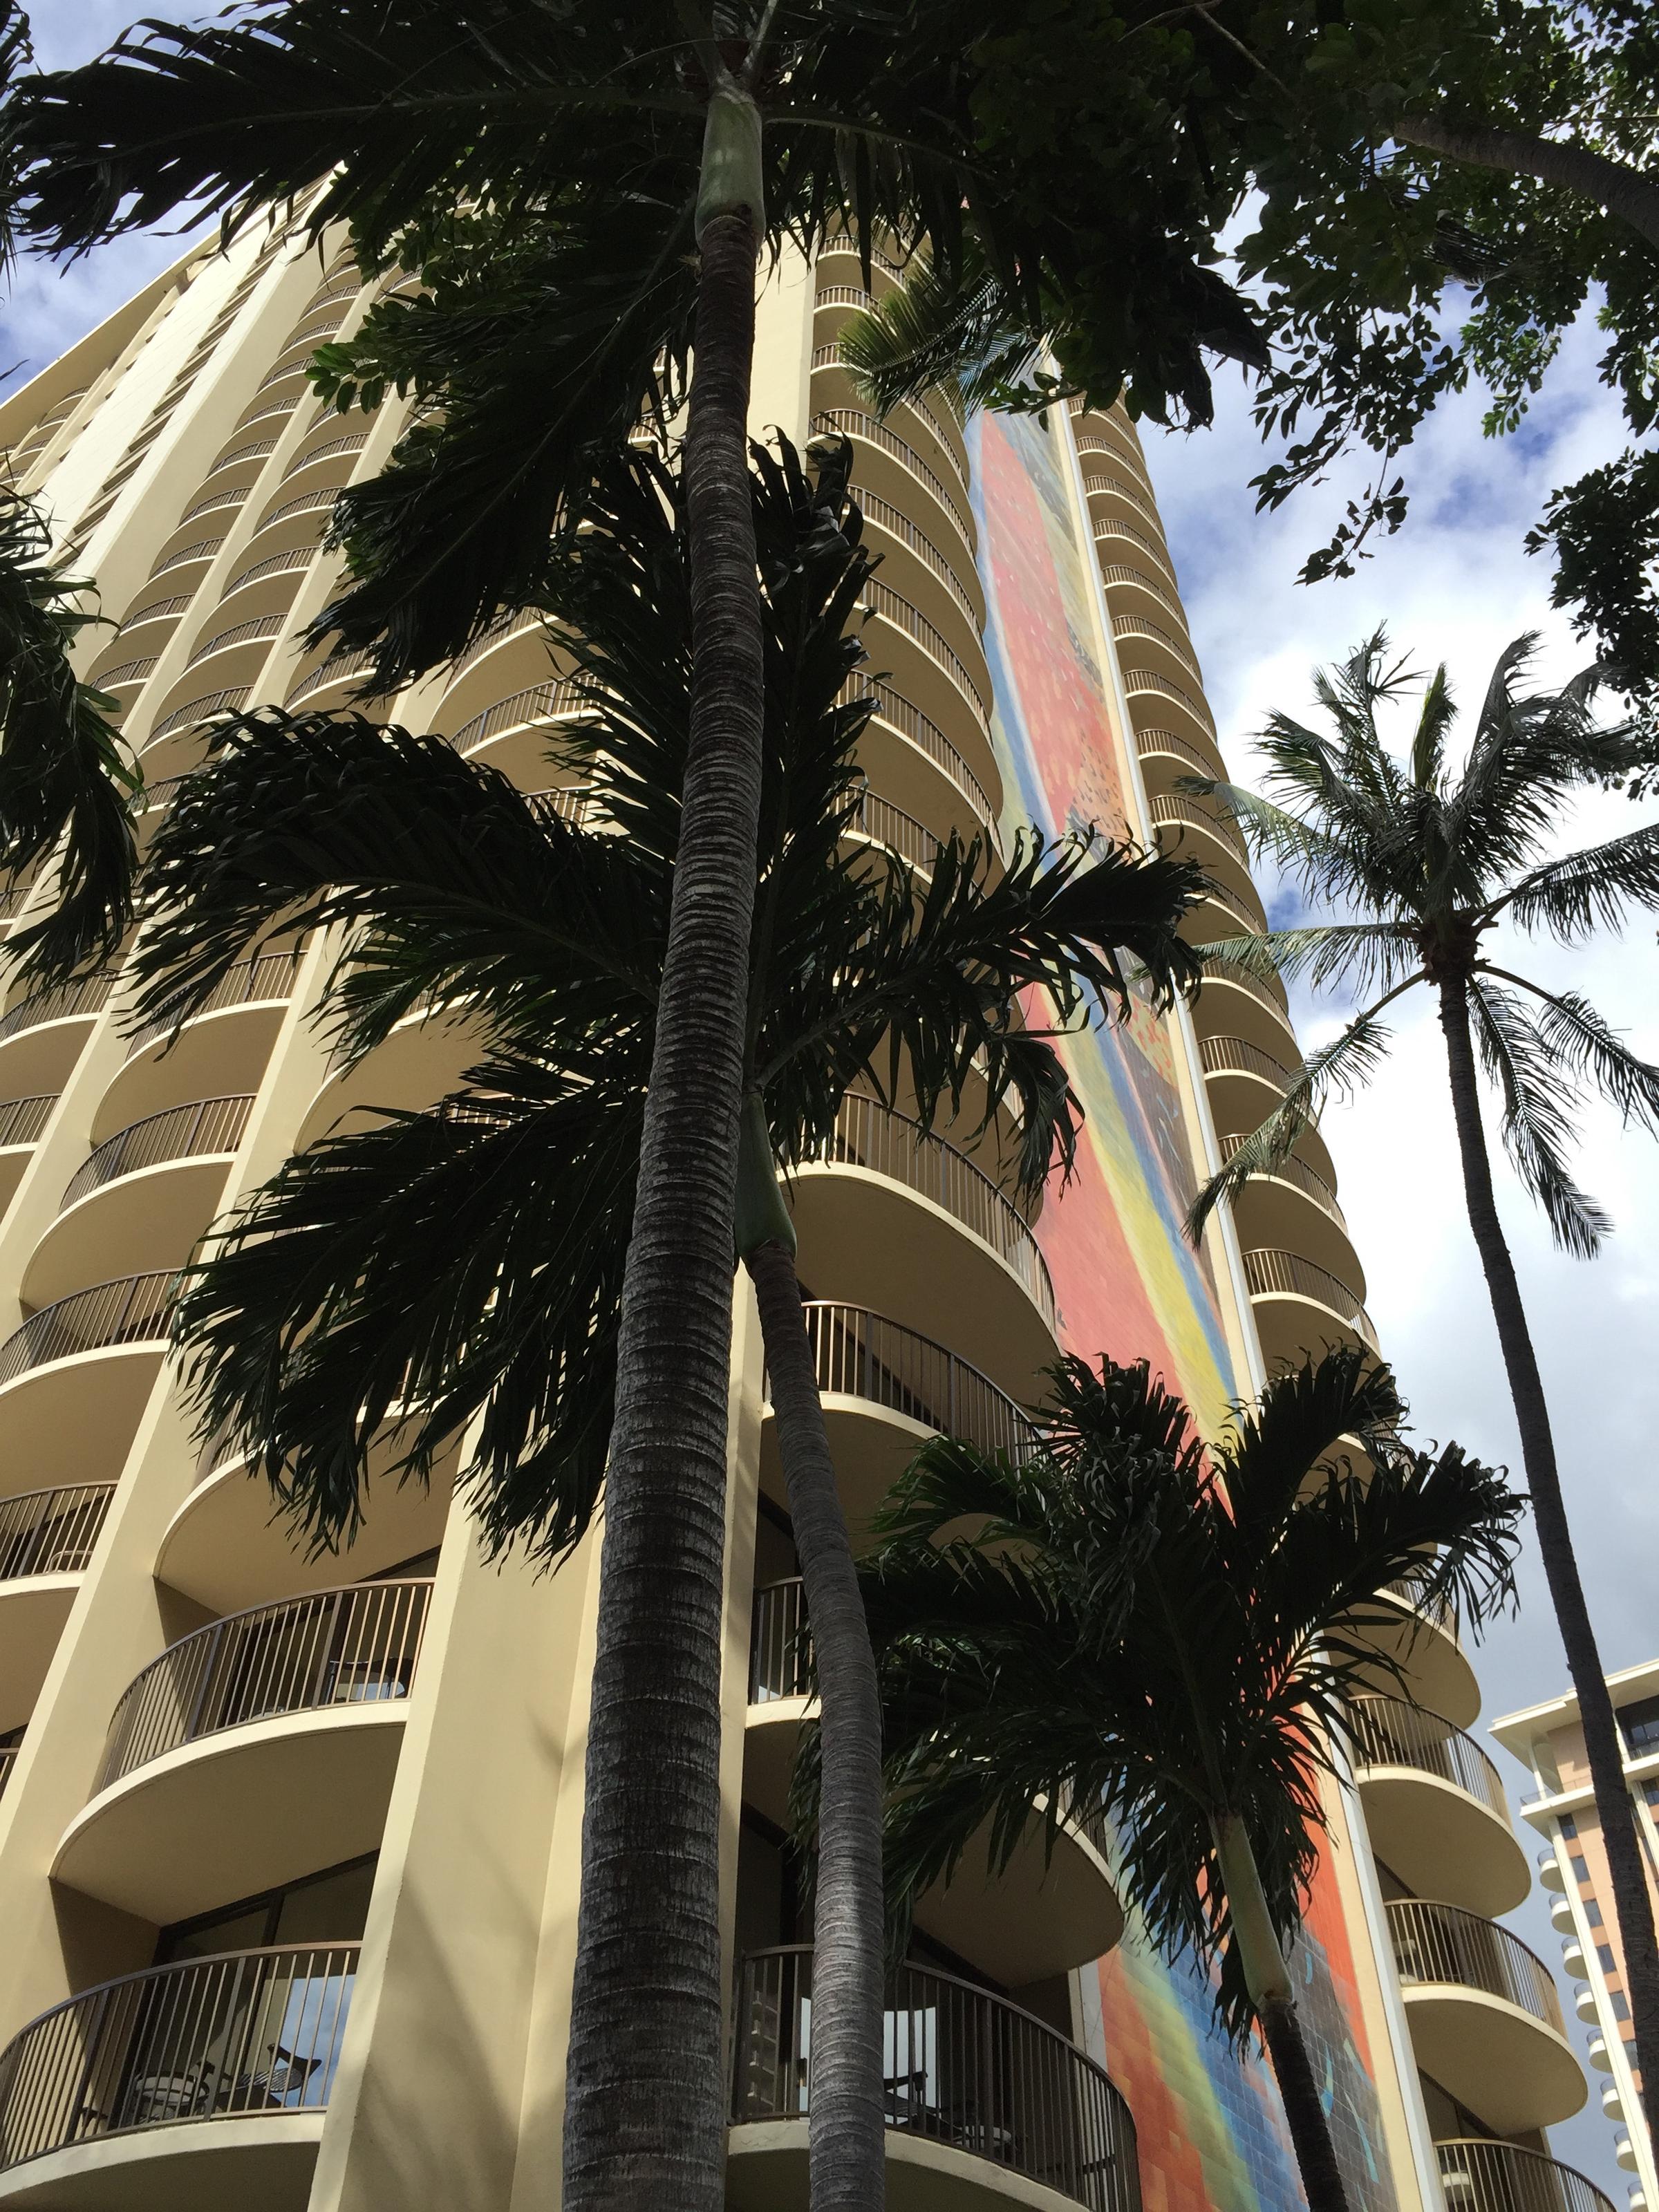 The Hilton Hawaiian Village--a Waikiki icon since 1955 | KCBX2400 x 3200